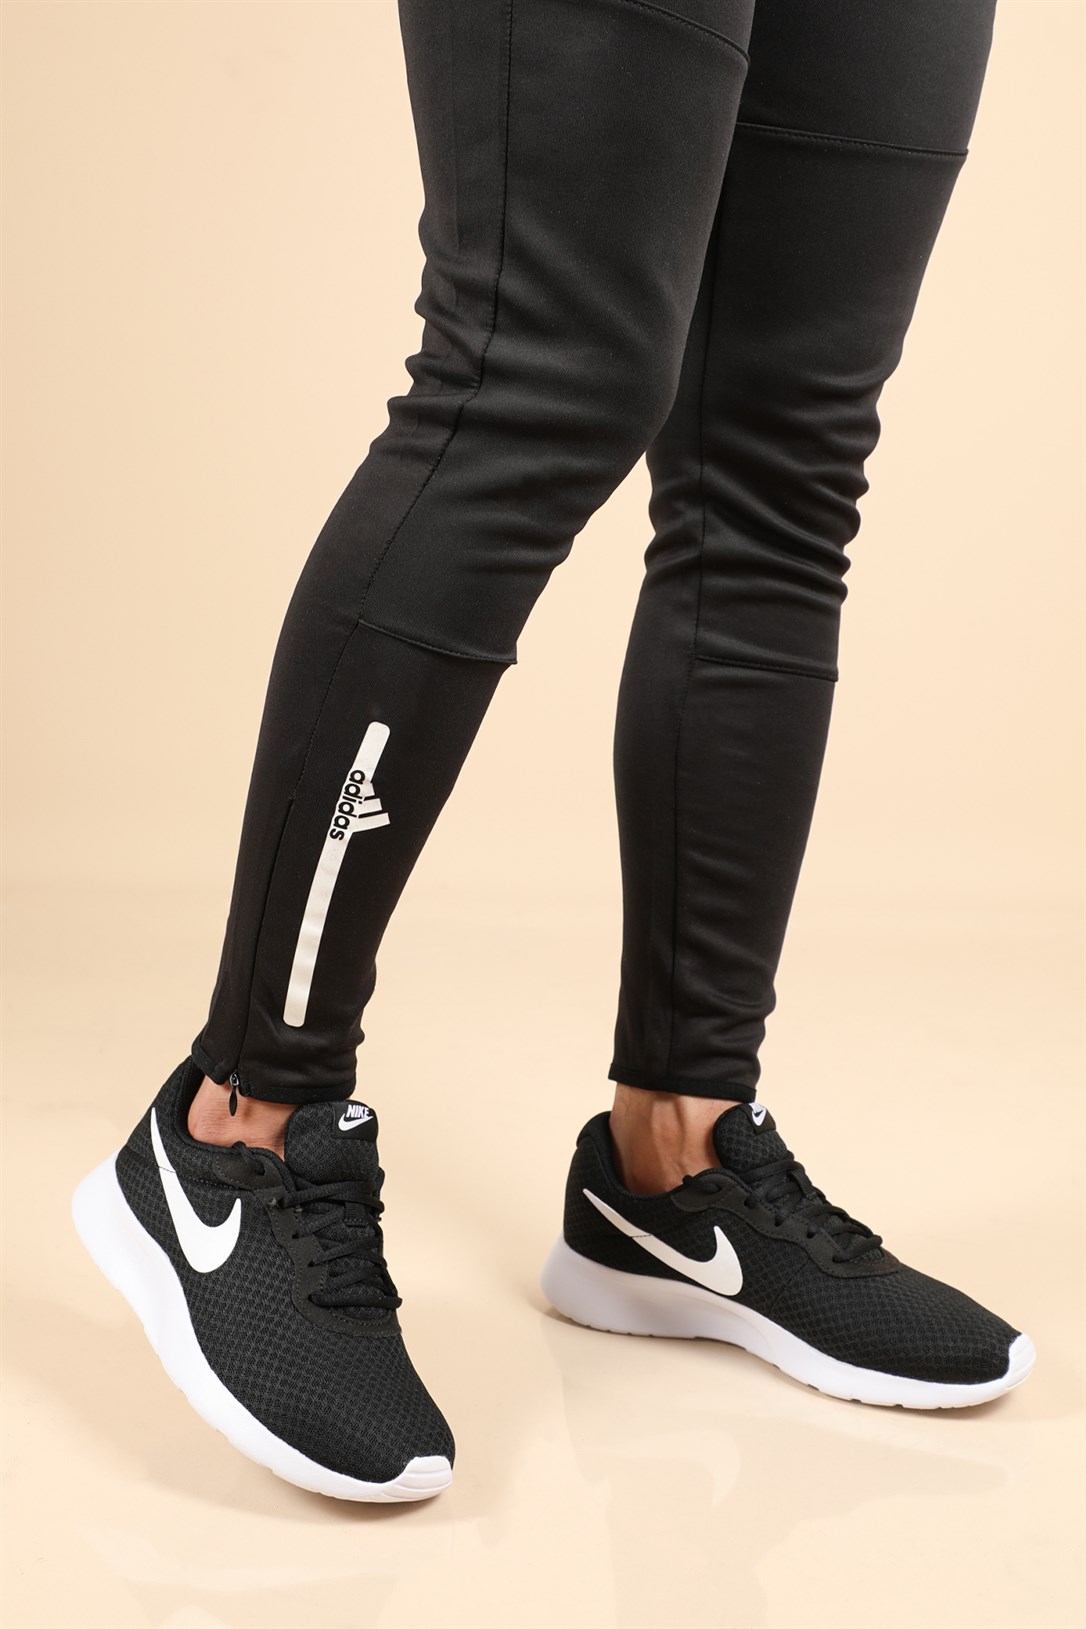 Nike Günlük Koşu Yürüyüş Syh Beyaz Erkek Spor Ayakkabı 812654-011 |  Ayakkabı City